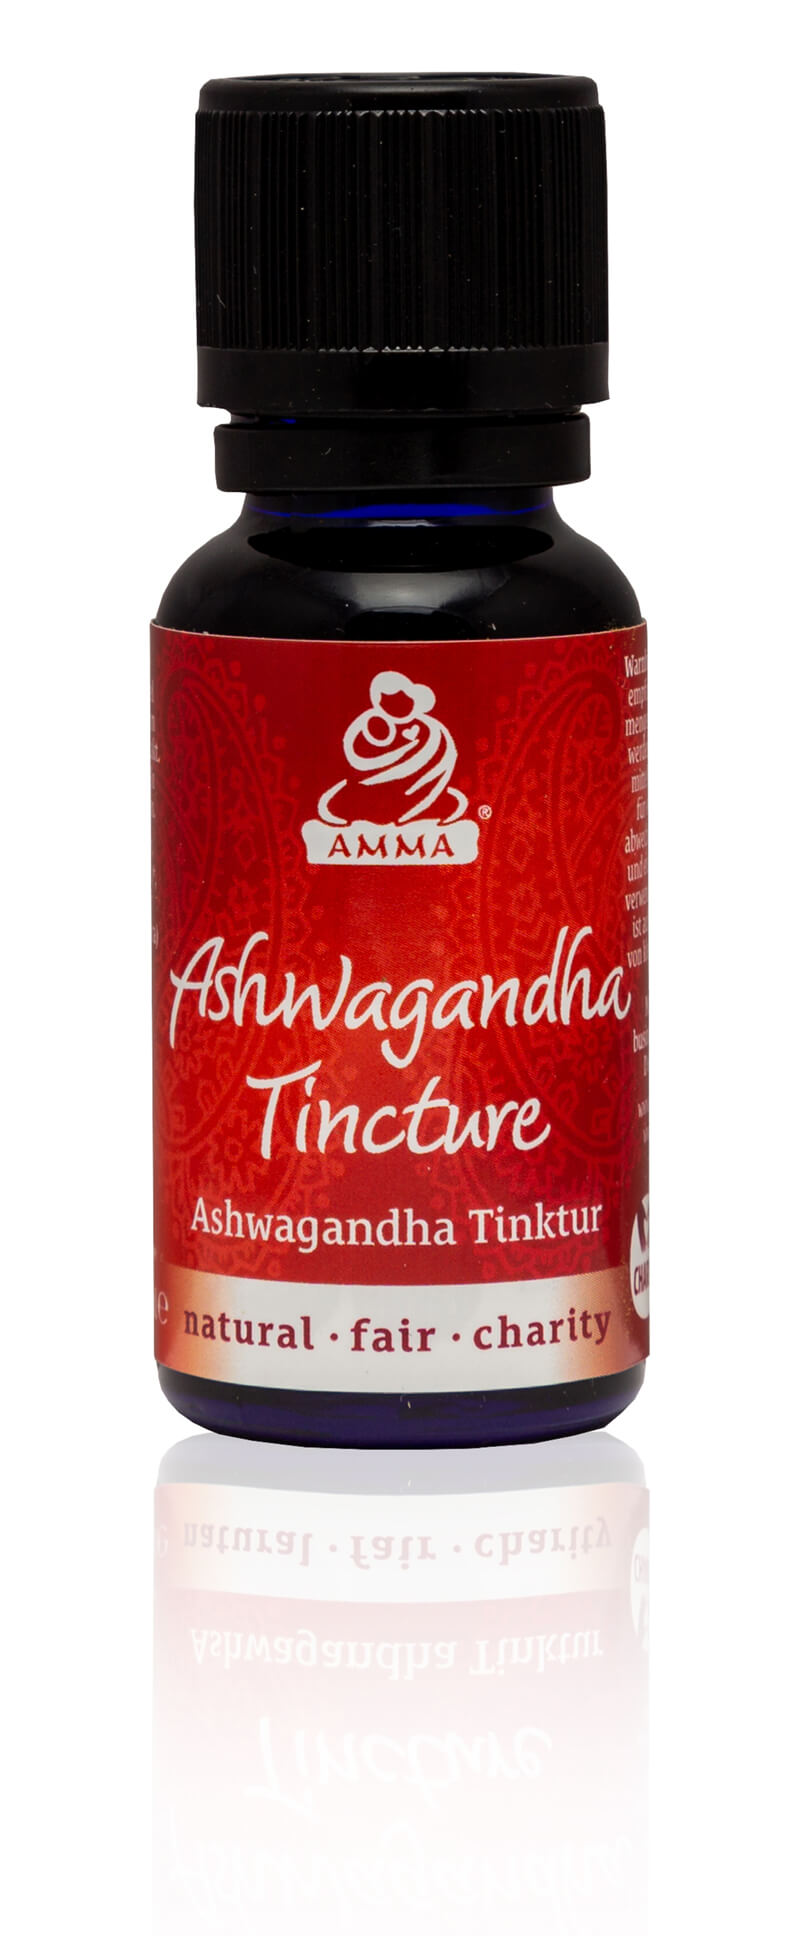 Ashwagandha Tincture, organic